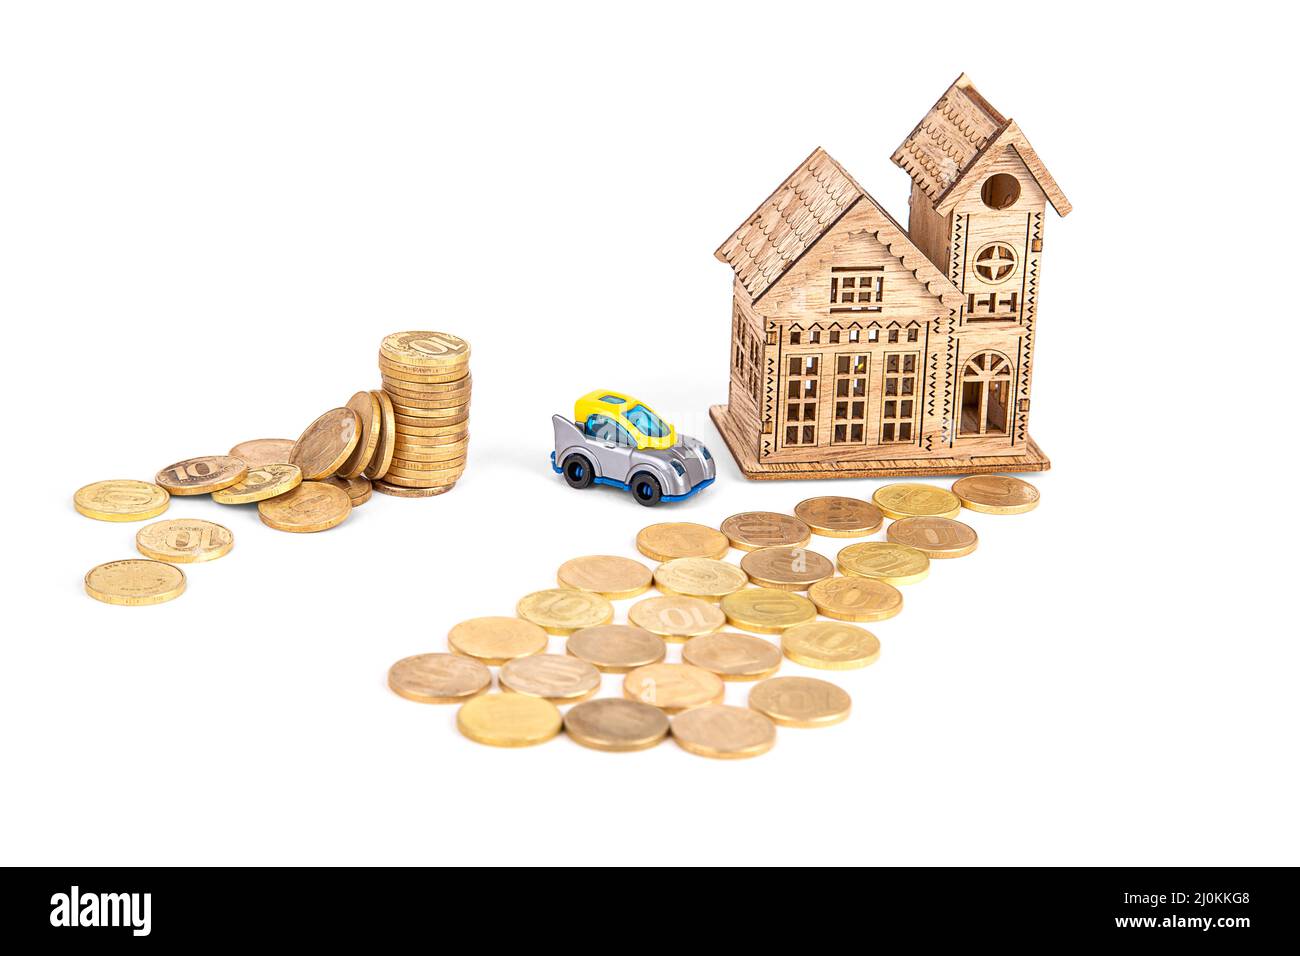 une maison en bois, une route en argent, une voiture et une pile de pièces sur fond blanc Banque D'Images